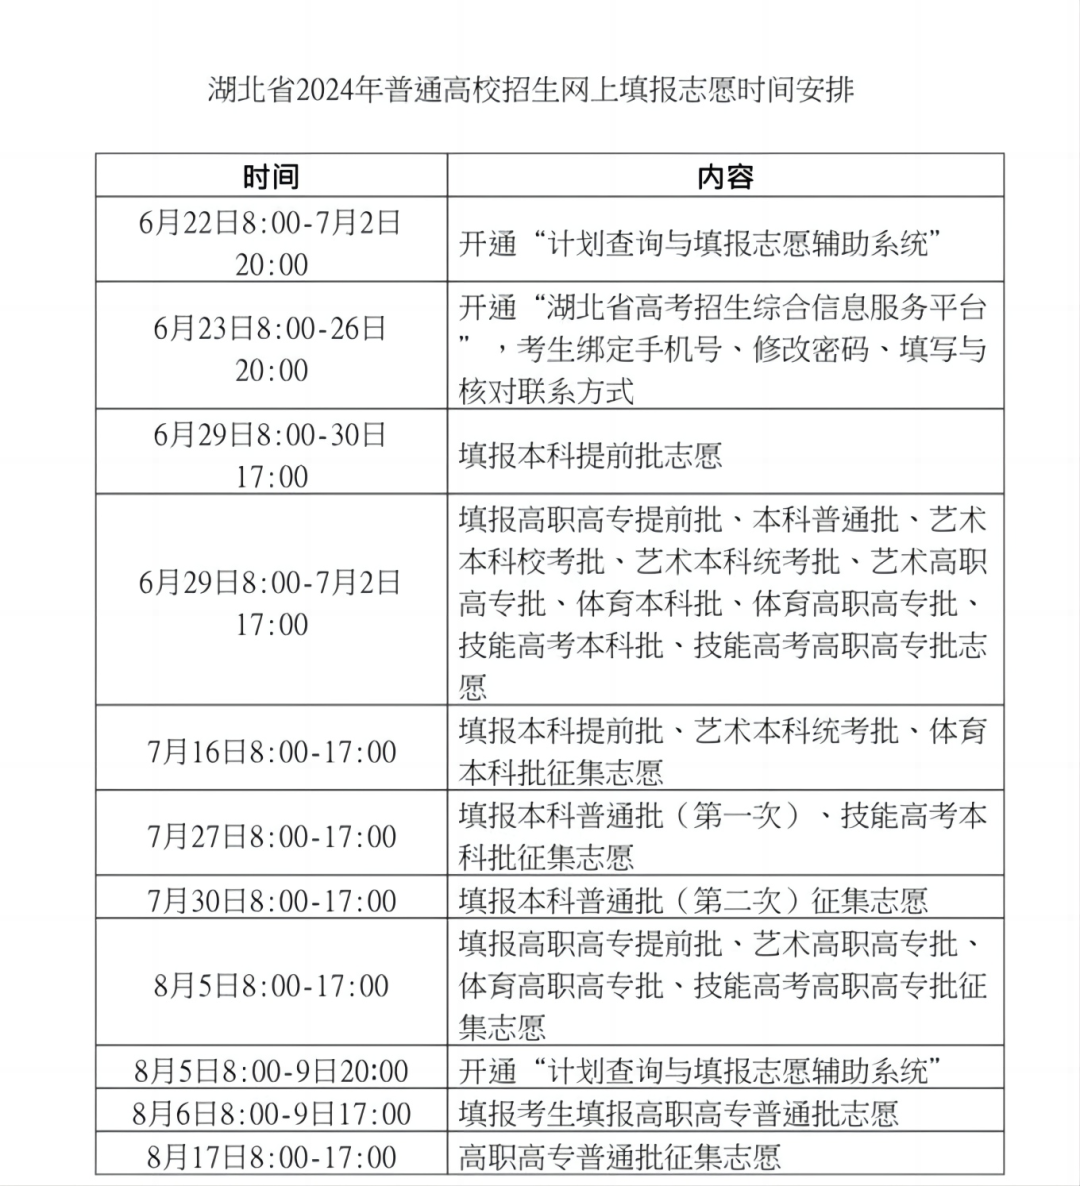 填报志愿时间湖南2021_志愿填报时间湖南省_湖南志愿填报时间